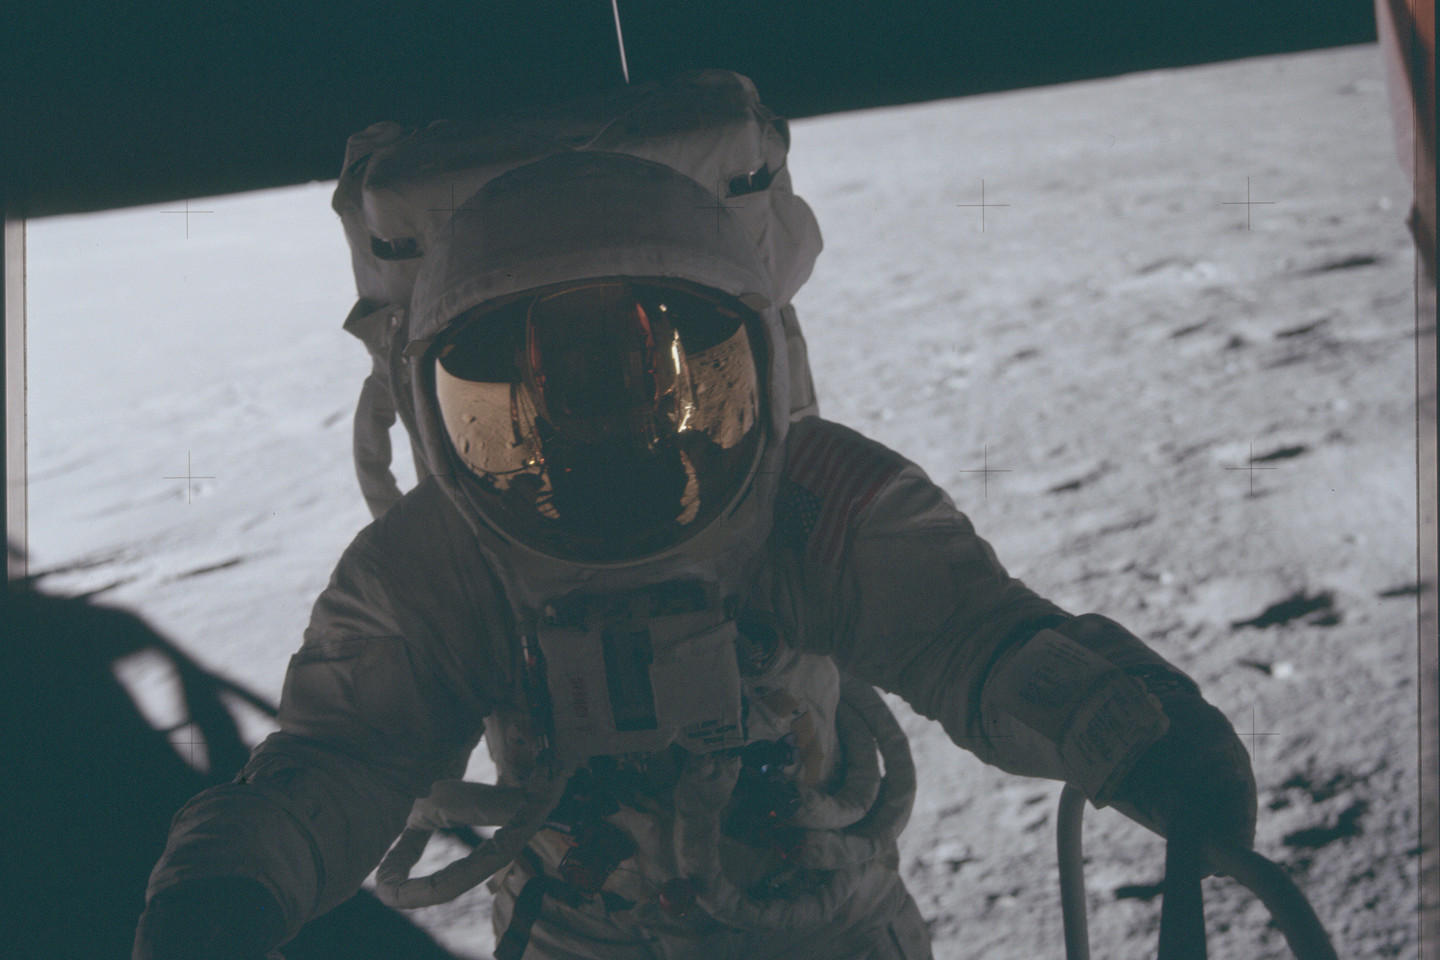 „Apollo“ nuotraukų archyve apstu įvairiausių kadrų: nuo Mėnulio paviršiaus iki astronautų darbo akimirkų.<br>NASA nuotr.